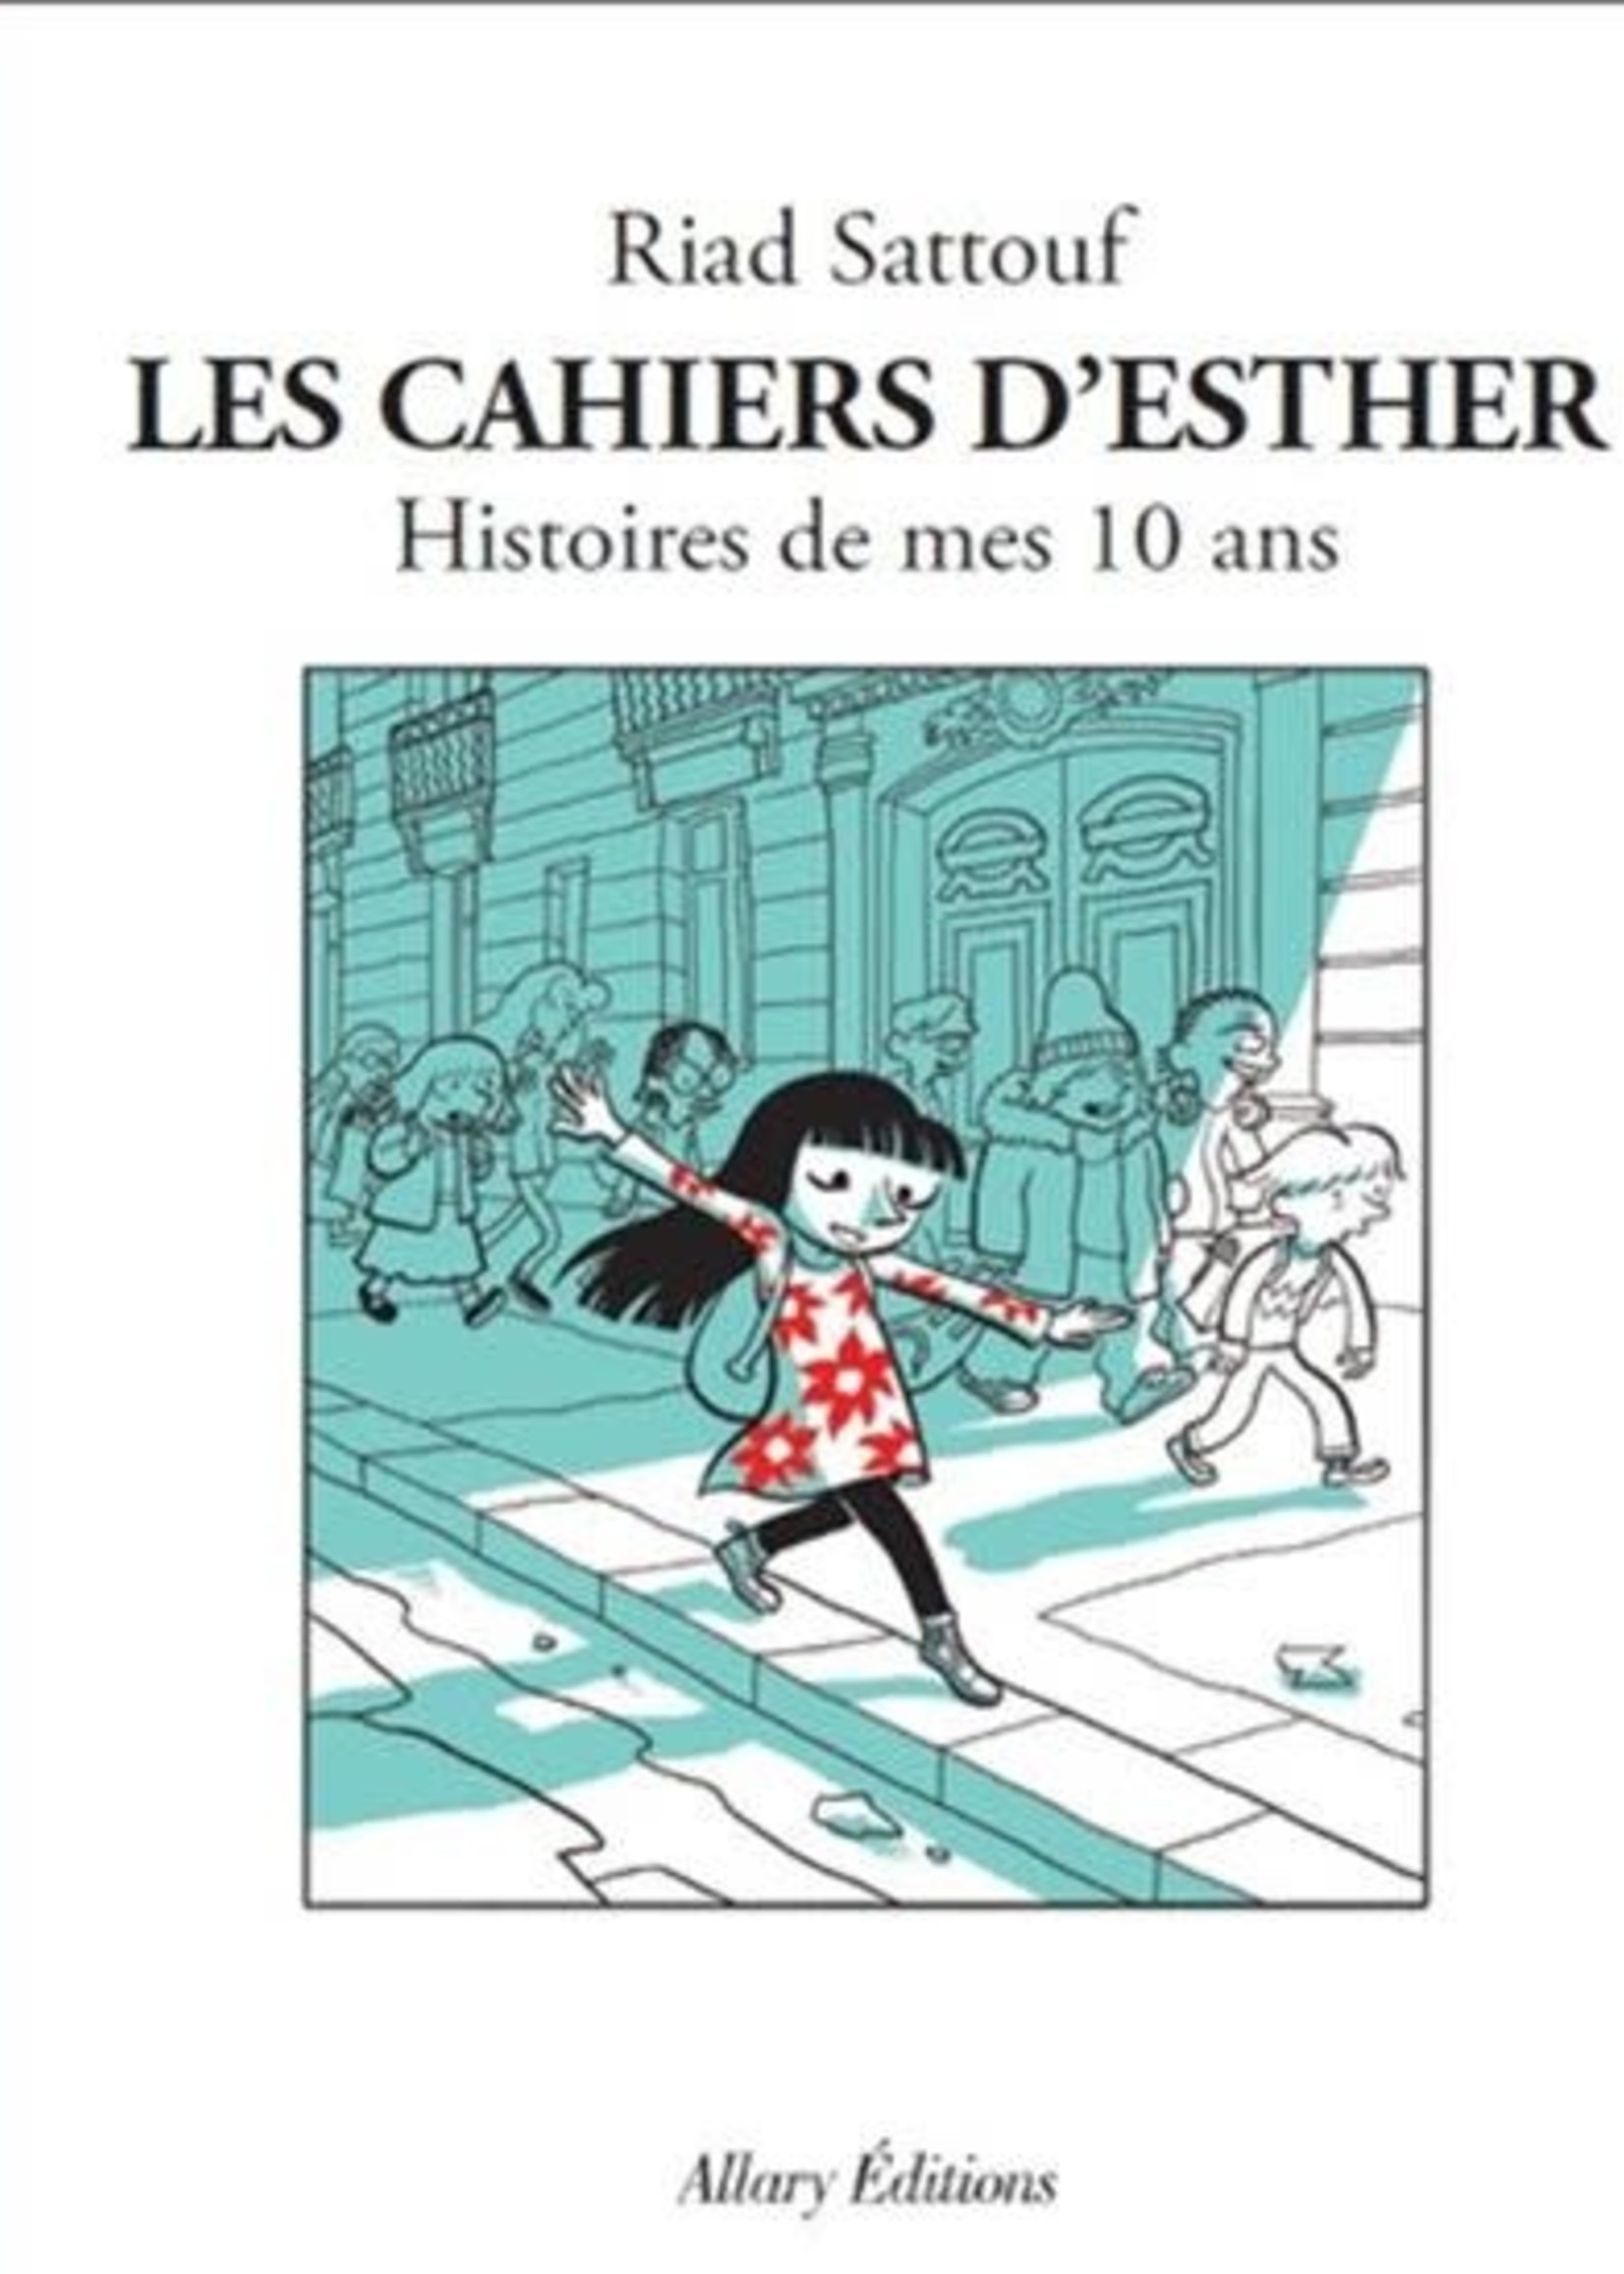 Les Cahiers d'Esther #01 Histoires de mes 10 ans De Riad Sattouf